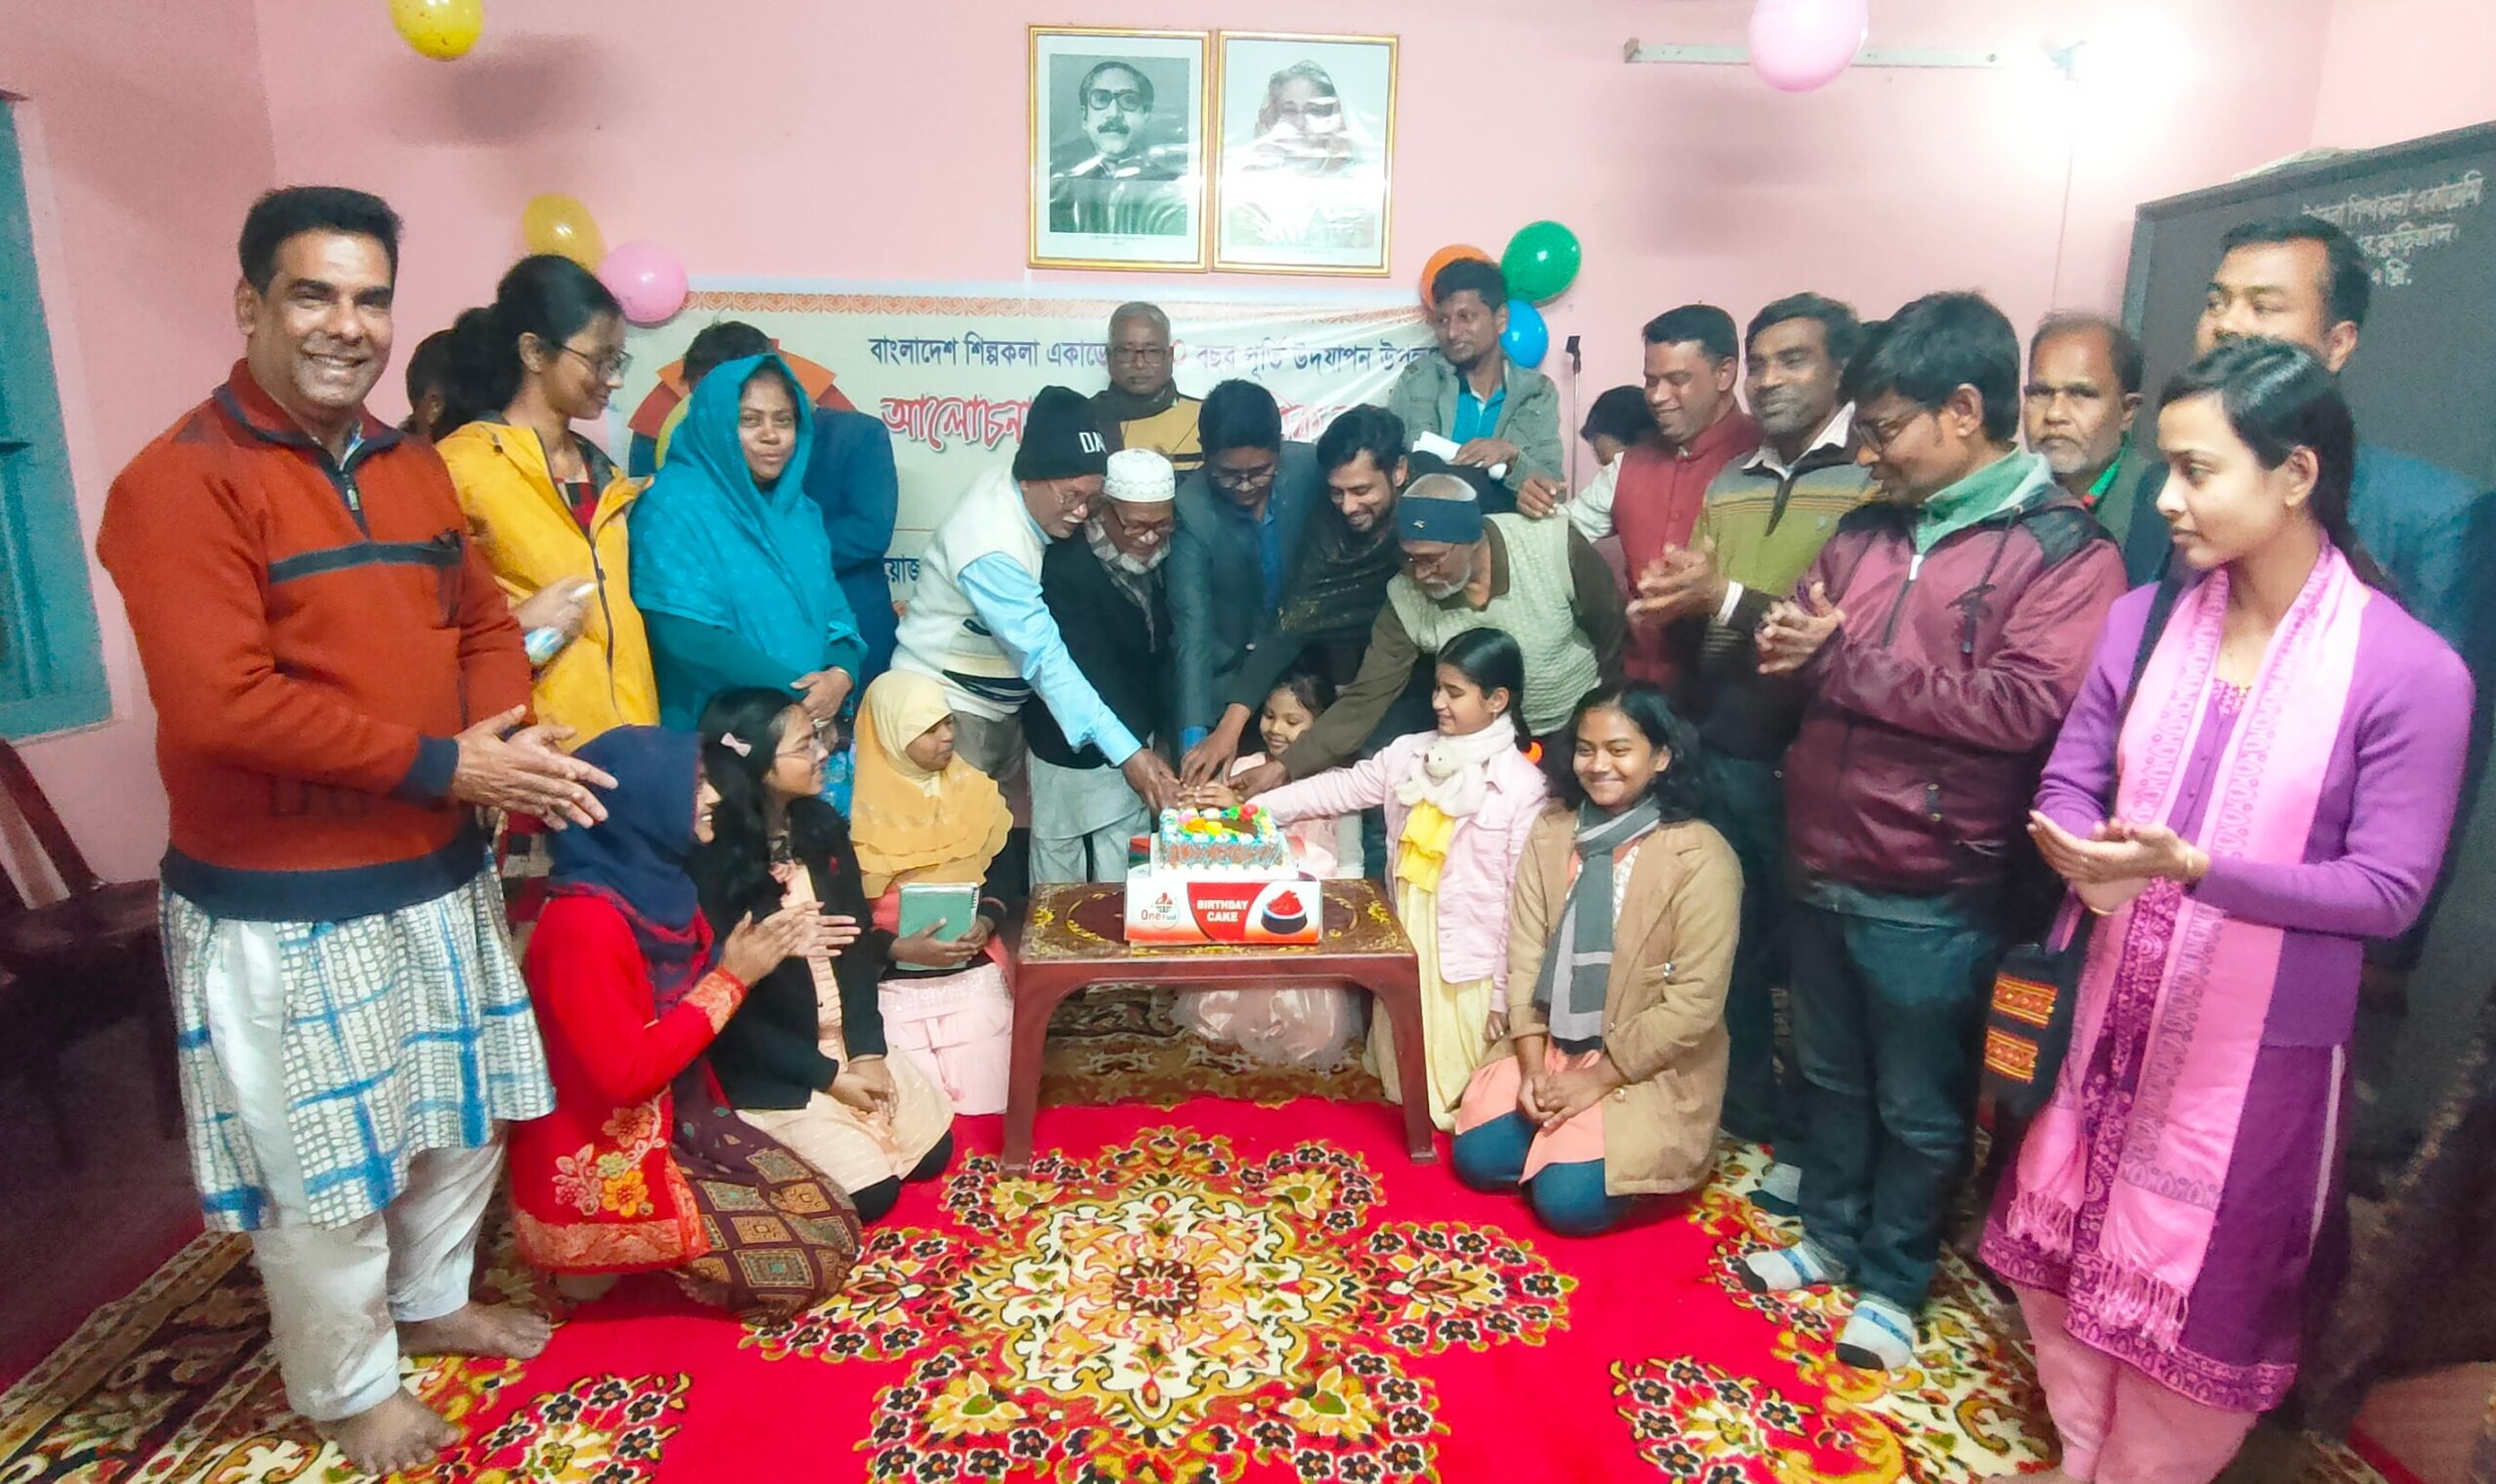 উলিপুরে বাংলাদেশ শিল্পকলা একাডেমির ৫০ বছর পূর্তি উদযাপন